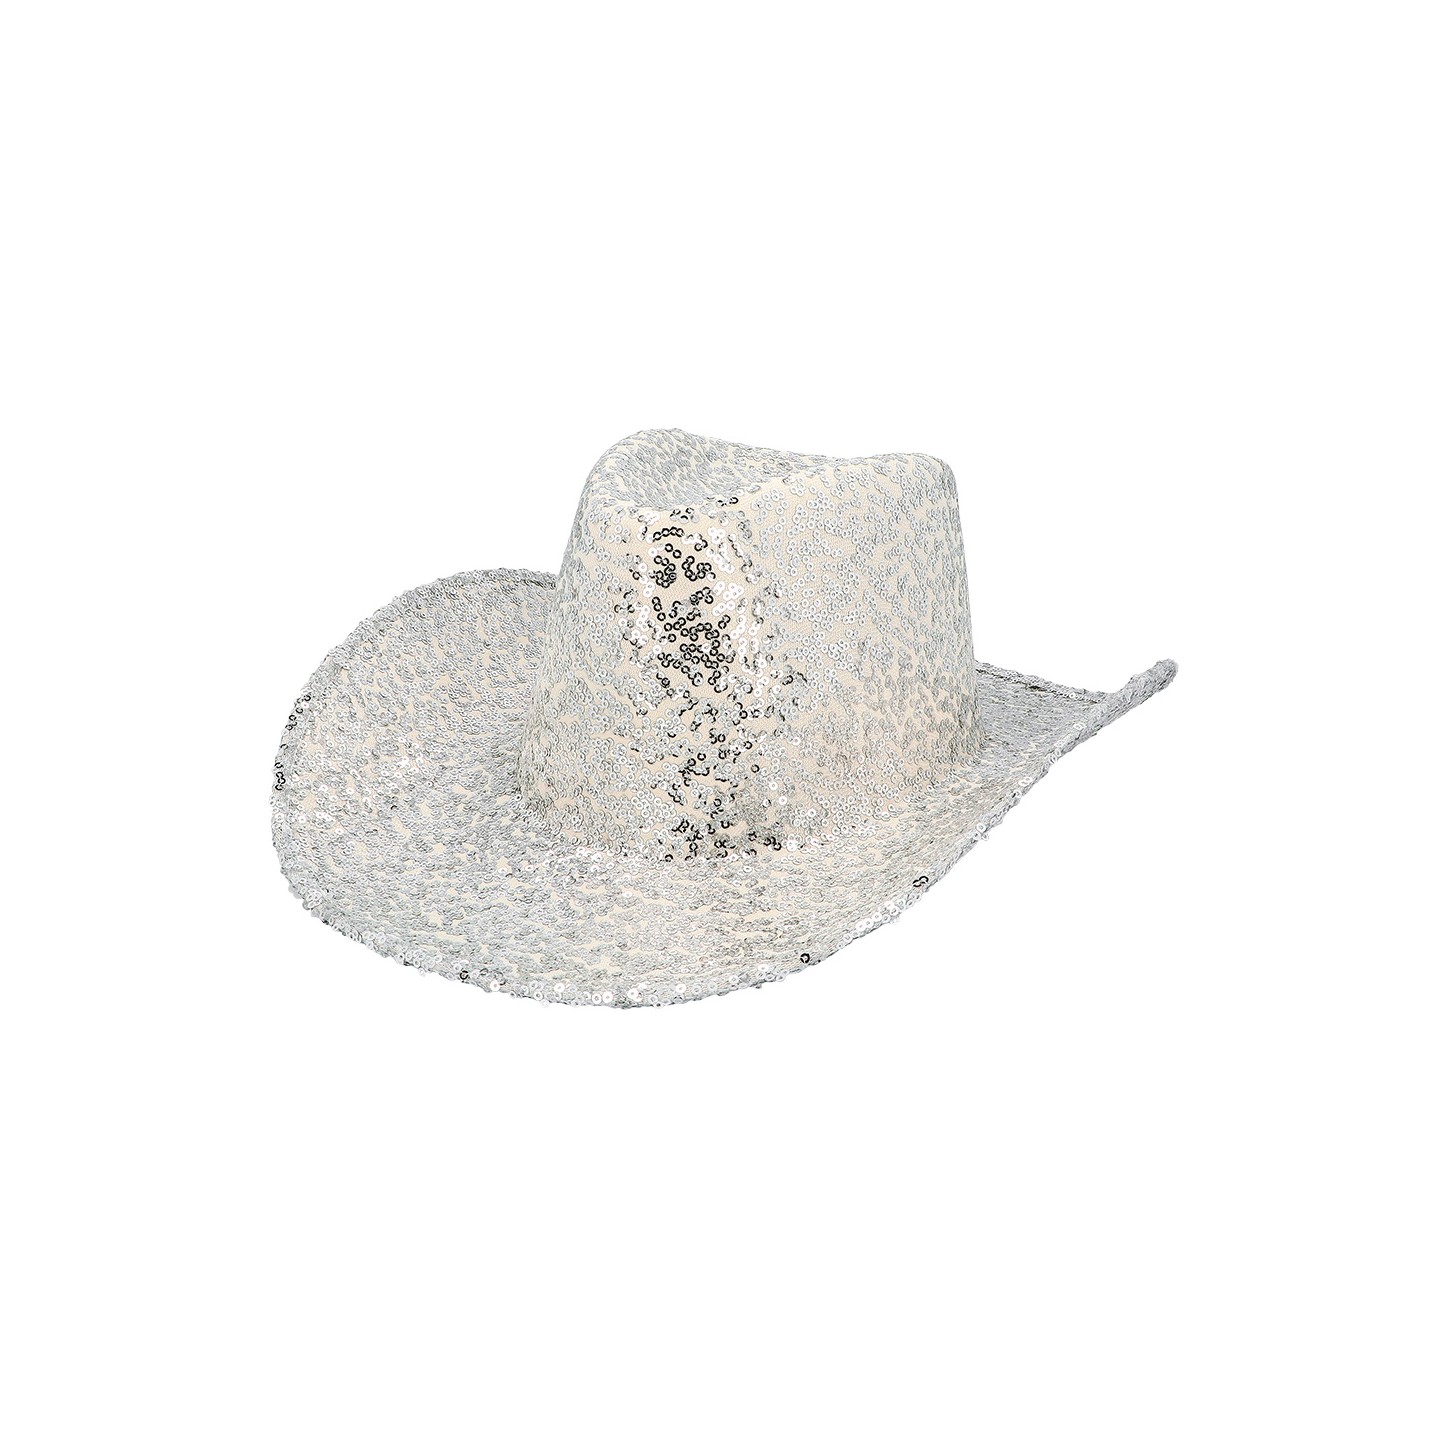 cowboyhoed zilver glitter hoed festival